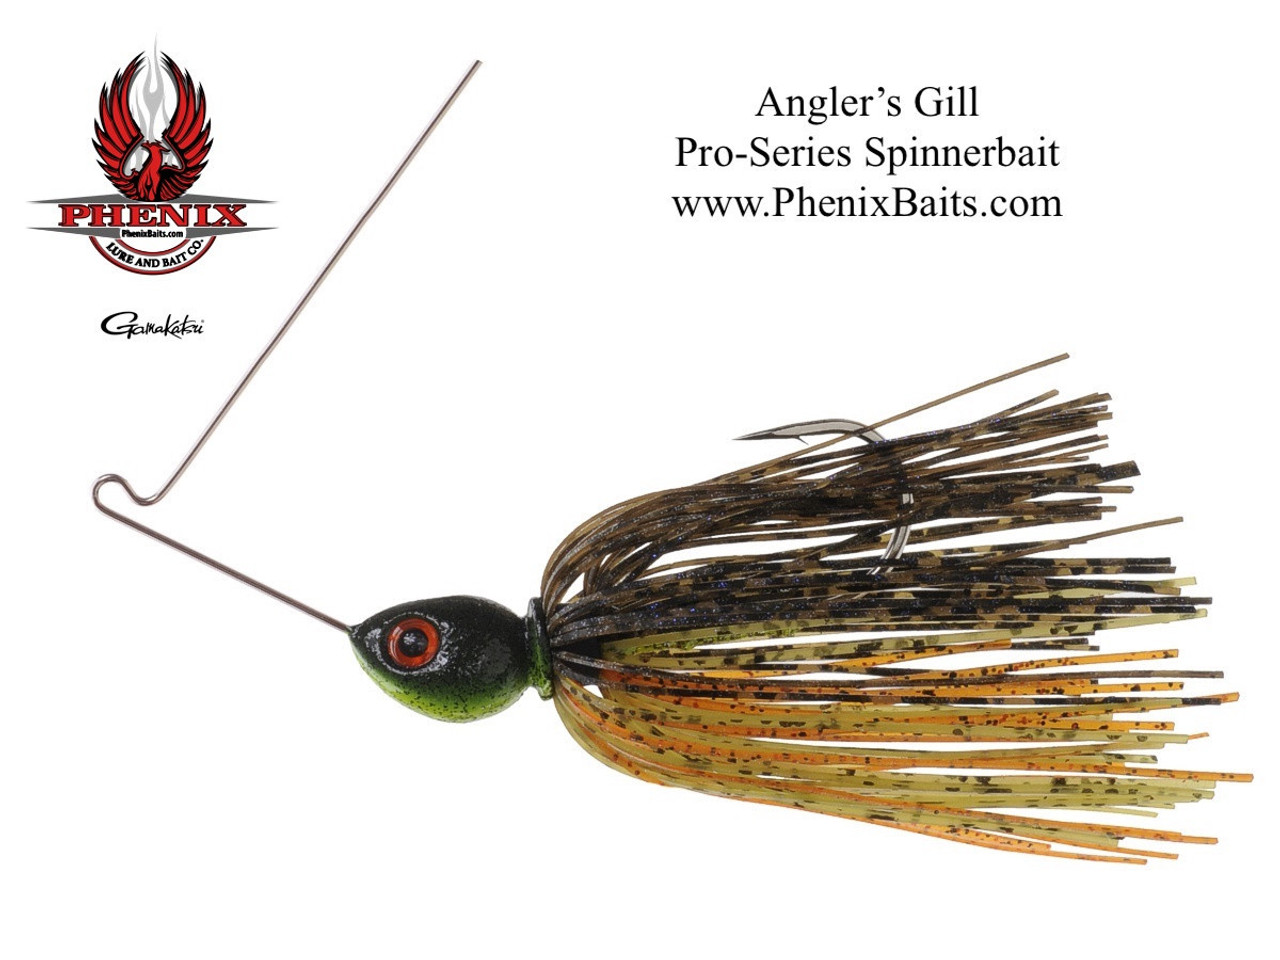 Phenix Pro-Series Custom Spinnerbait - Angler's Gill 5/8 oz.